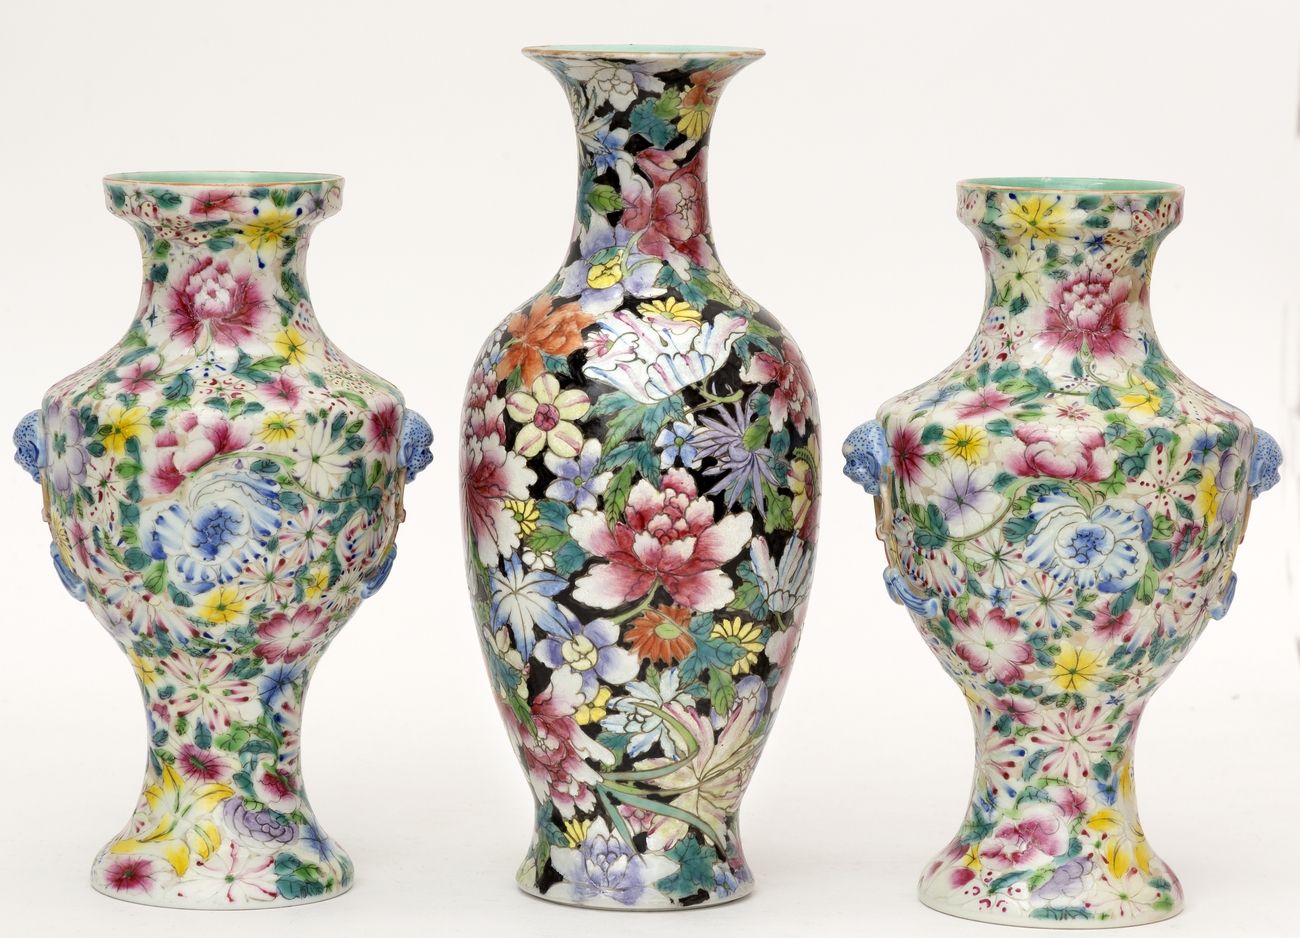 Null 中国，民国时期(1912-1949)
拍品包括一对花瓶和一个有米勒弗勒尔装饰的瓷瓶。
伪造的乾隆款。
高度：23厘米和27厘米